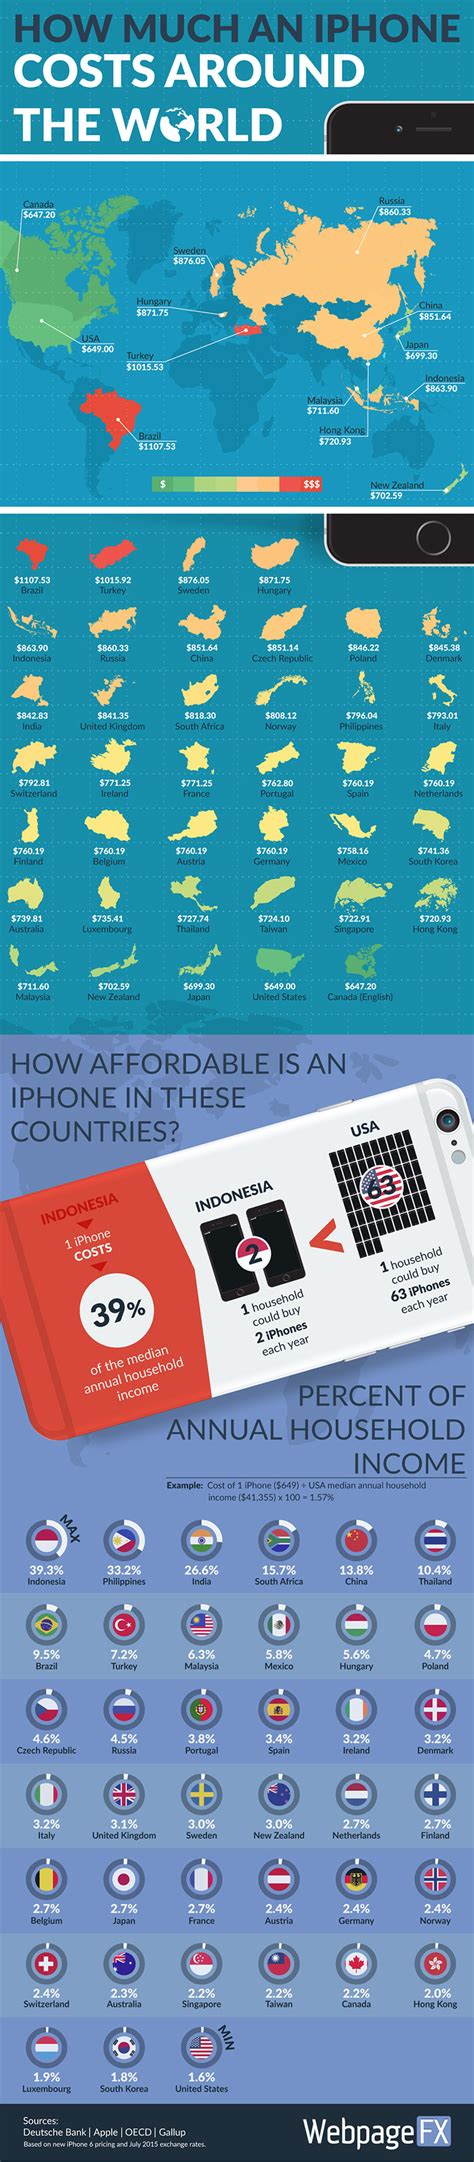 Infográfico Mostra Quanto Custa O Iphone Em Diferentes Países Do Mundo